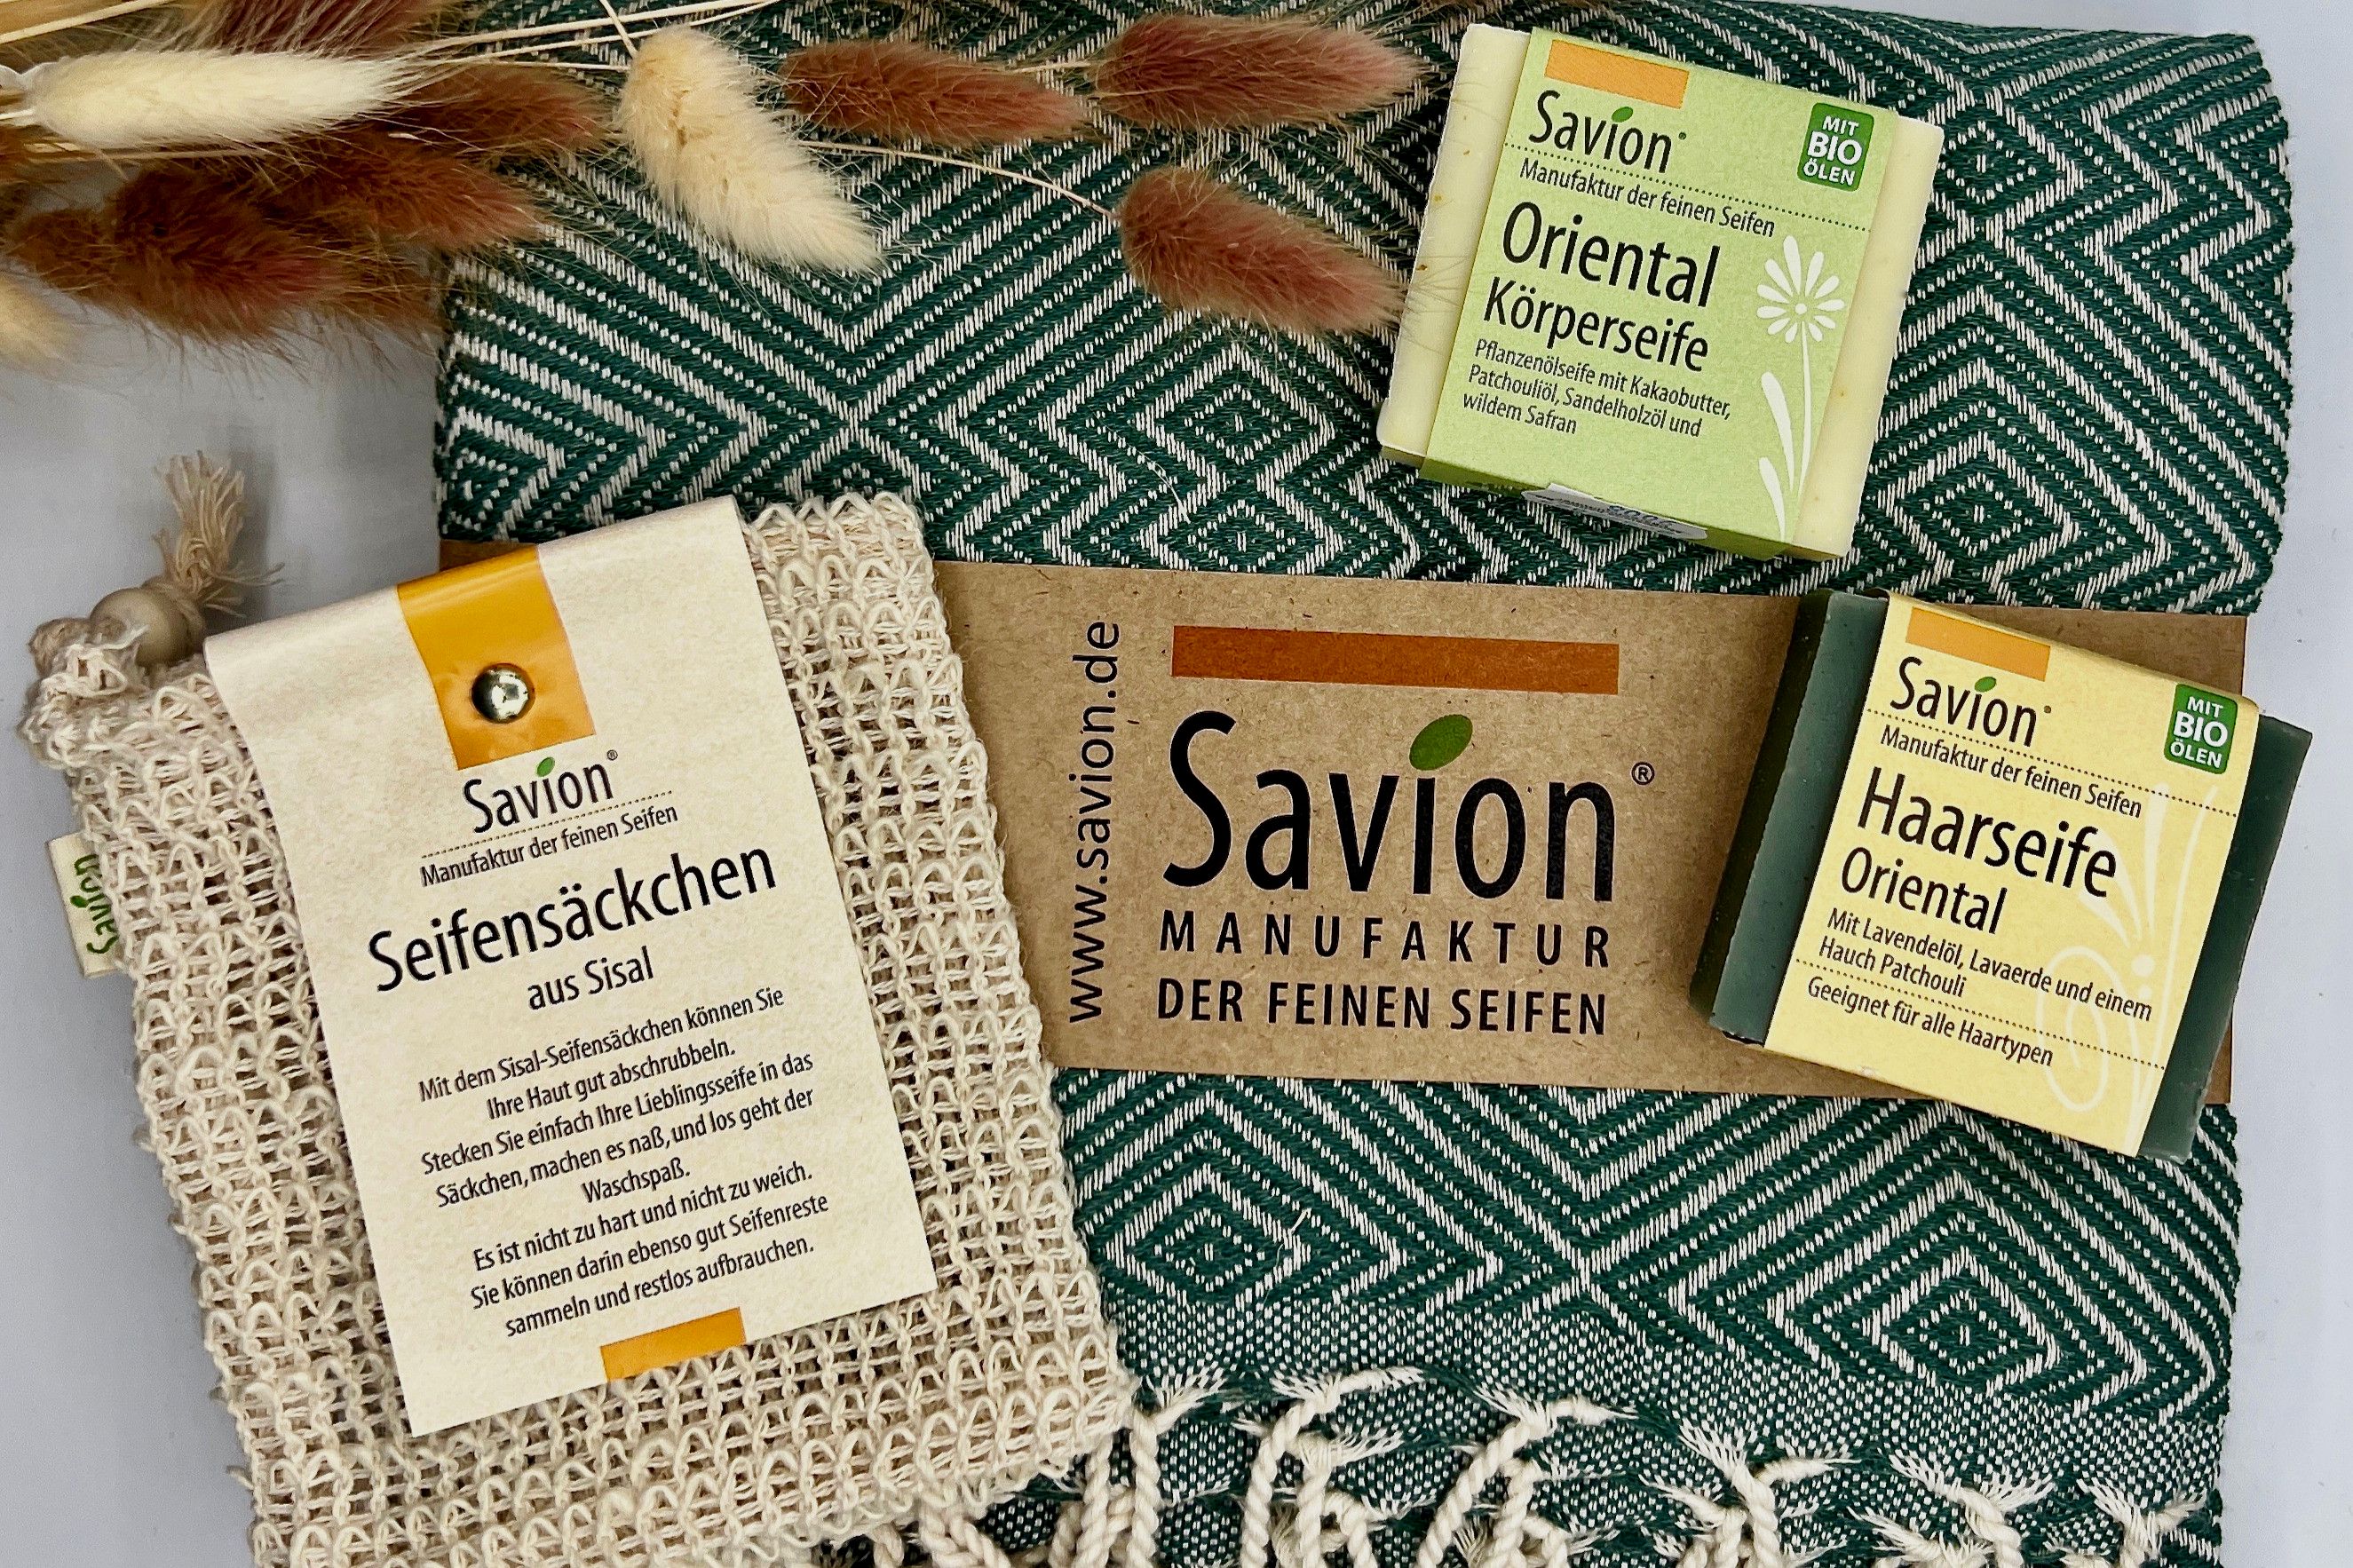 Savion - Manufaktur der feine Seifen